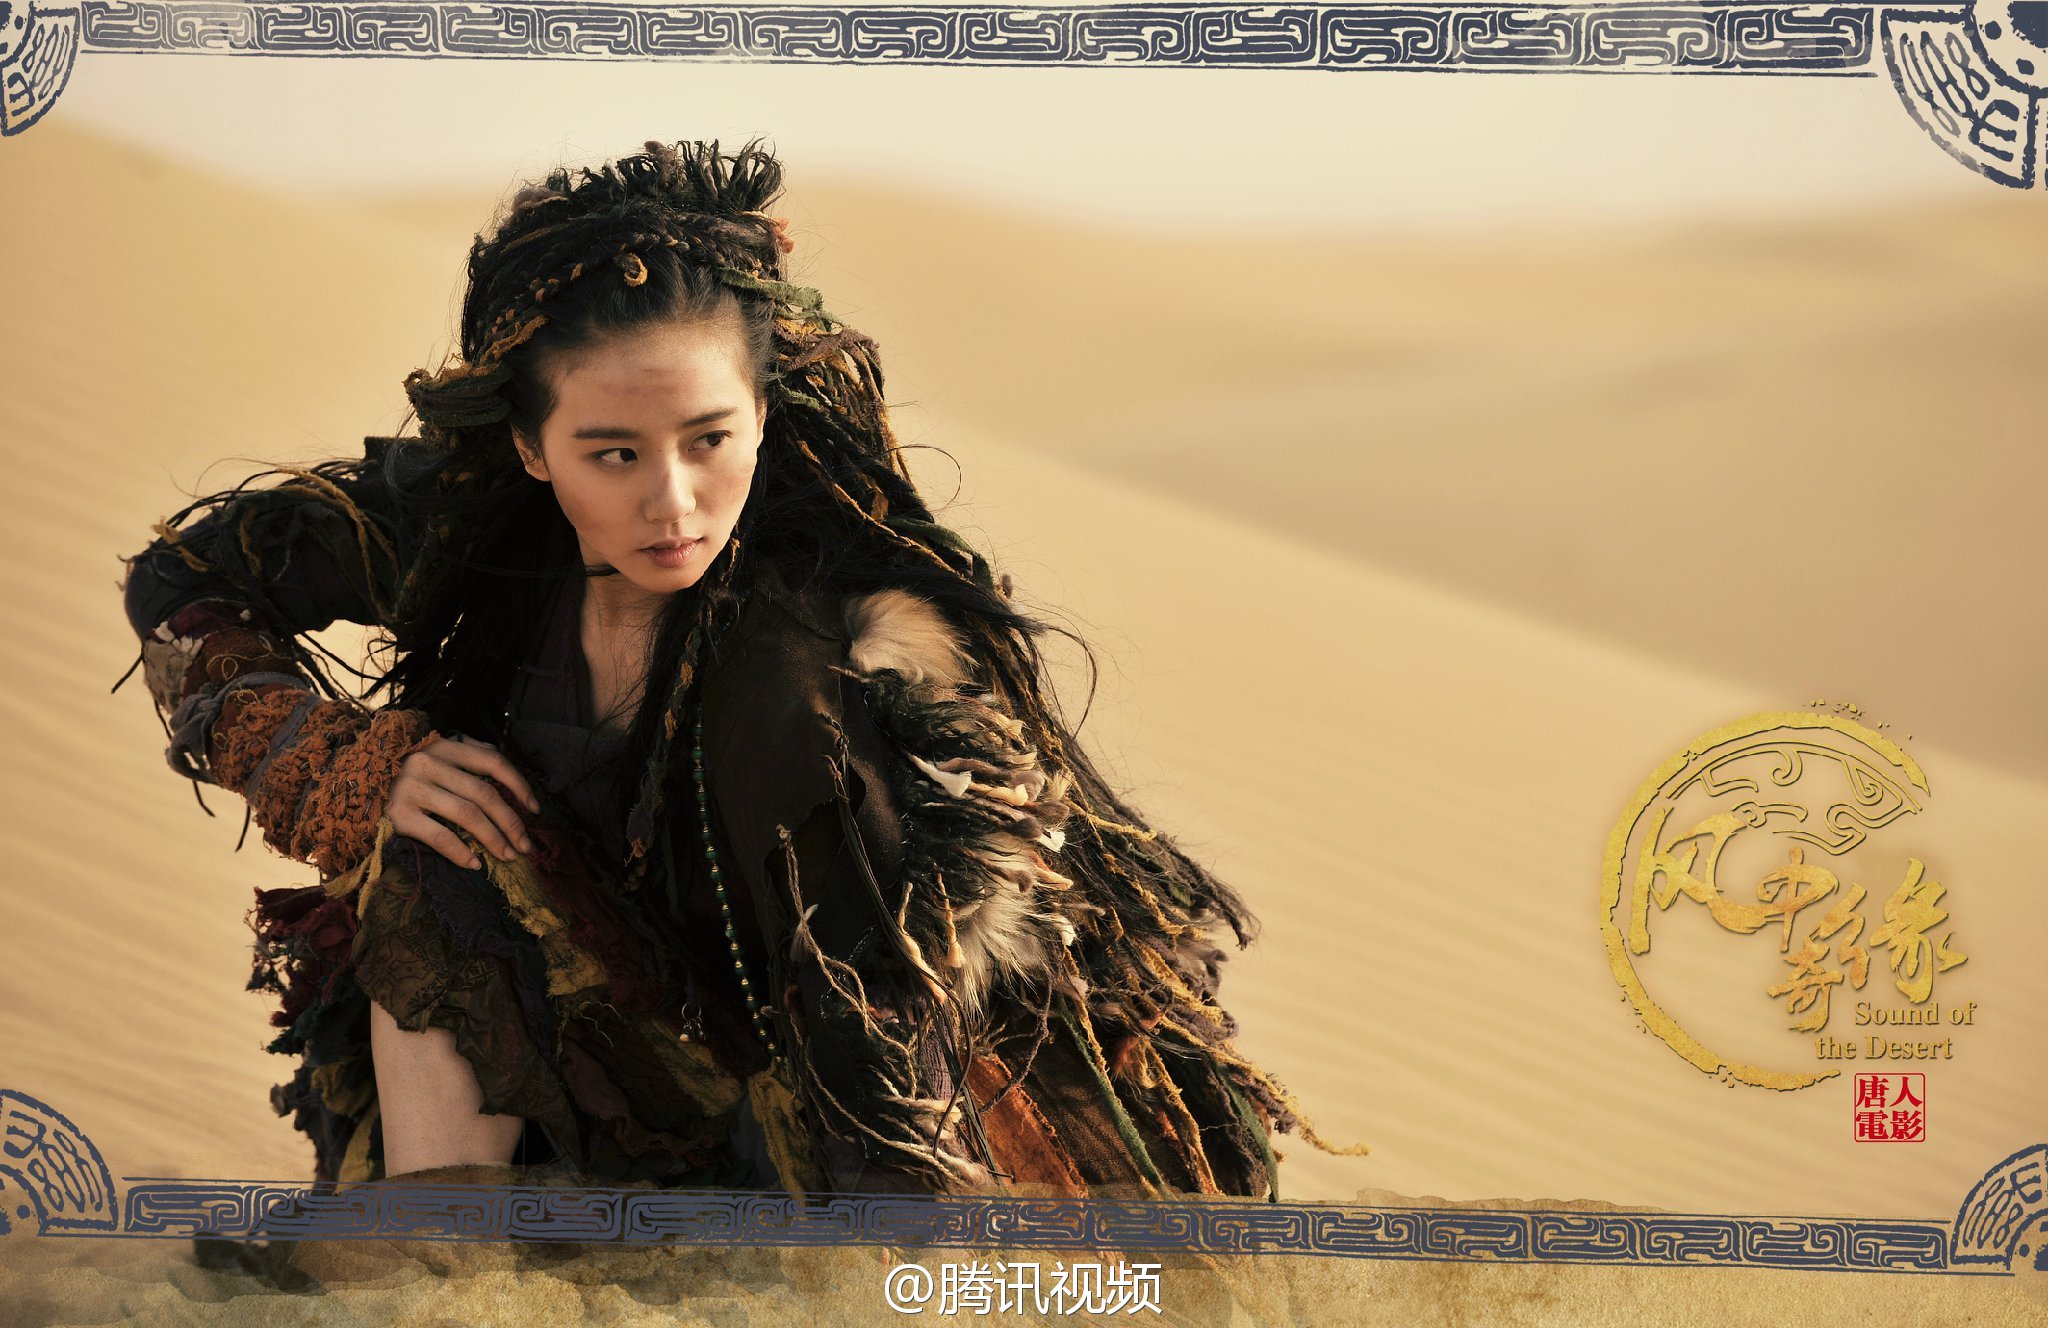 2014《风中奇缘》&《大漠谣》:刘诗诗